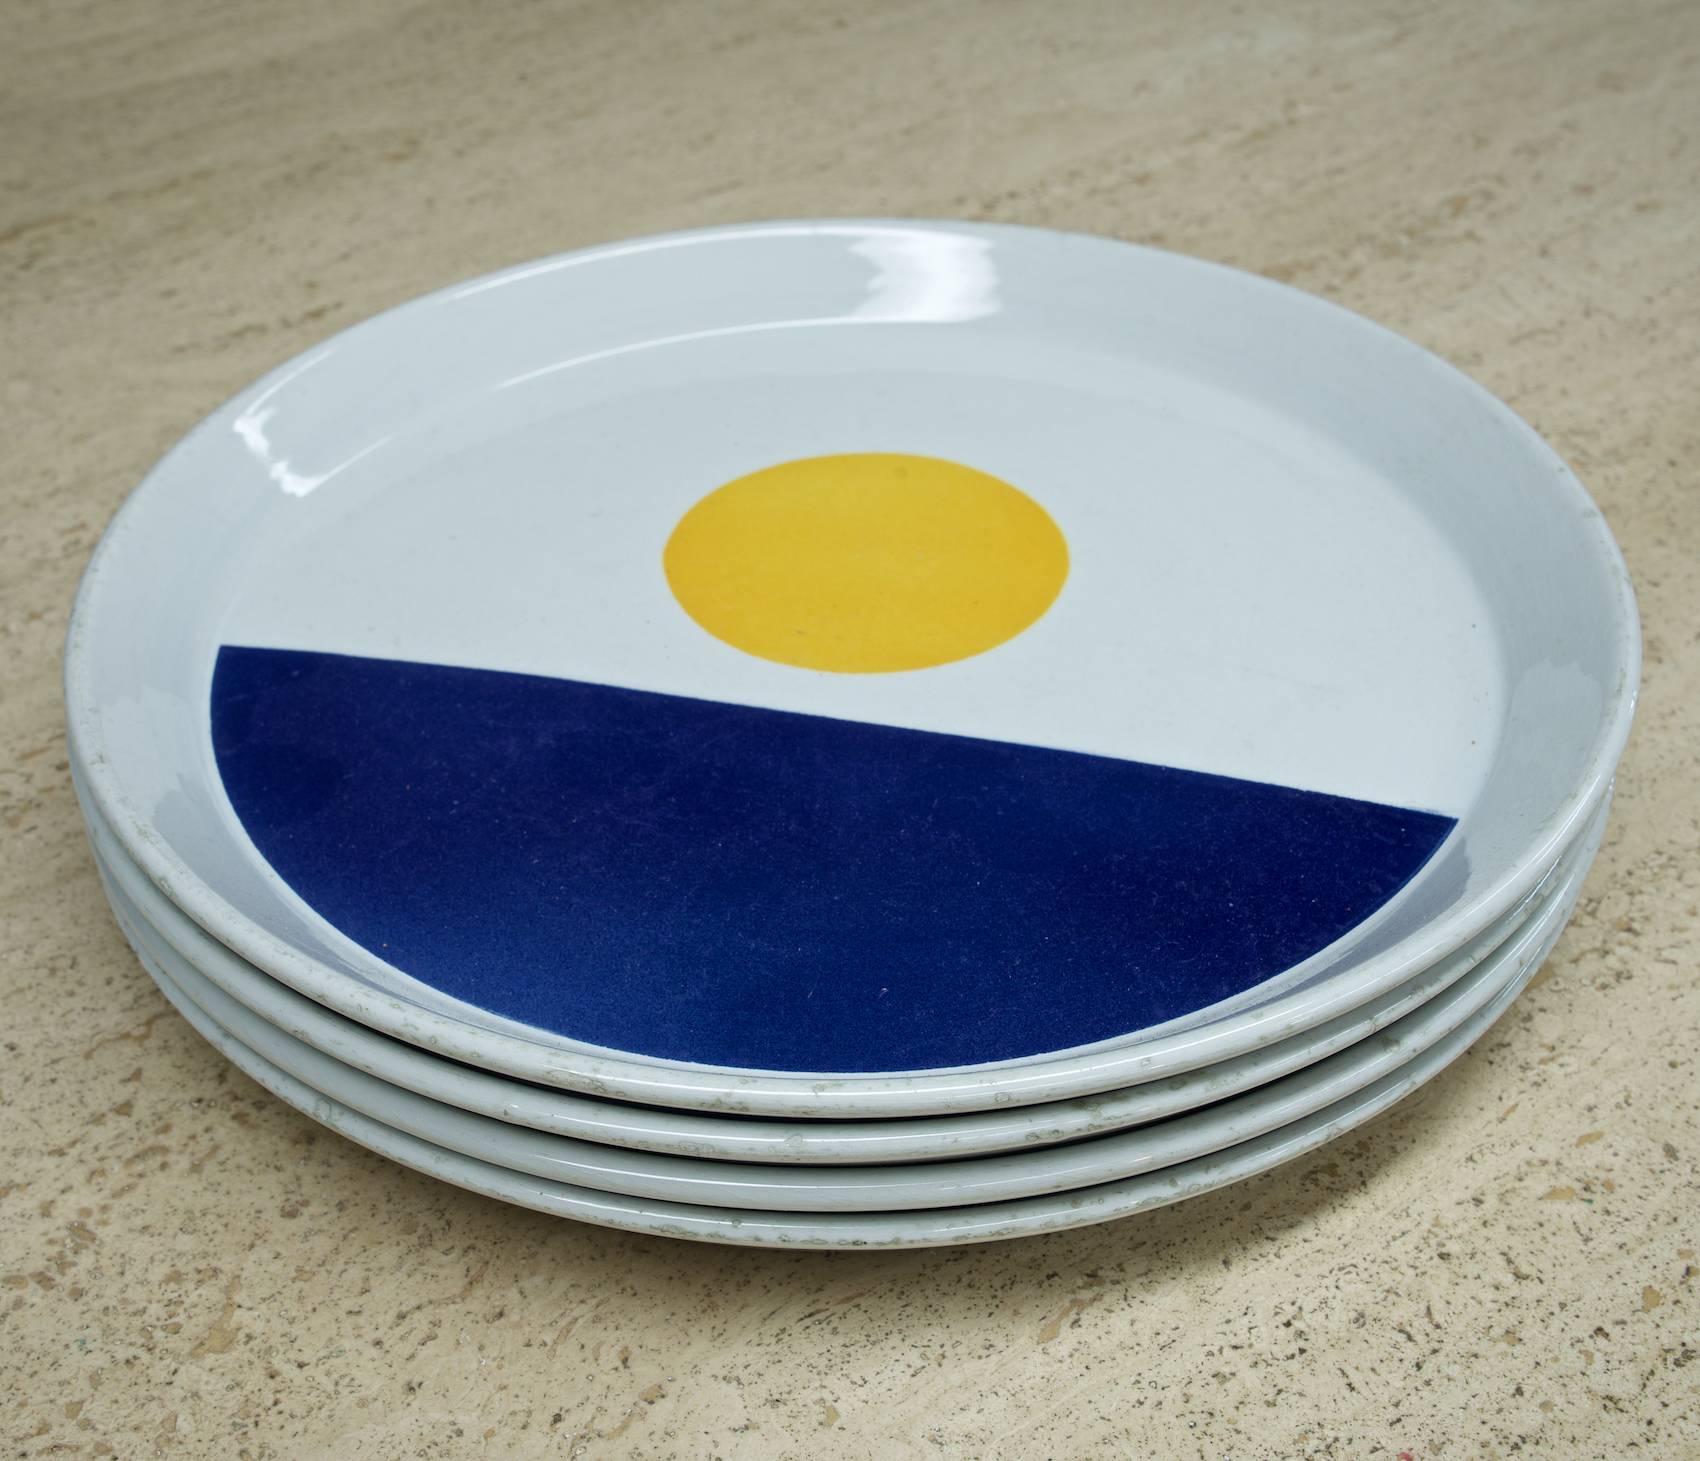 Rare set of four colorful ceramic plates.